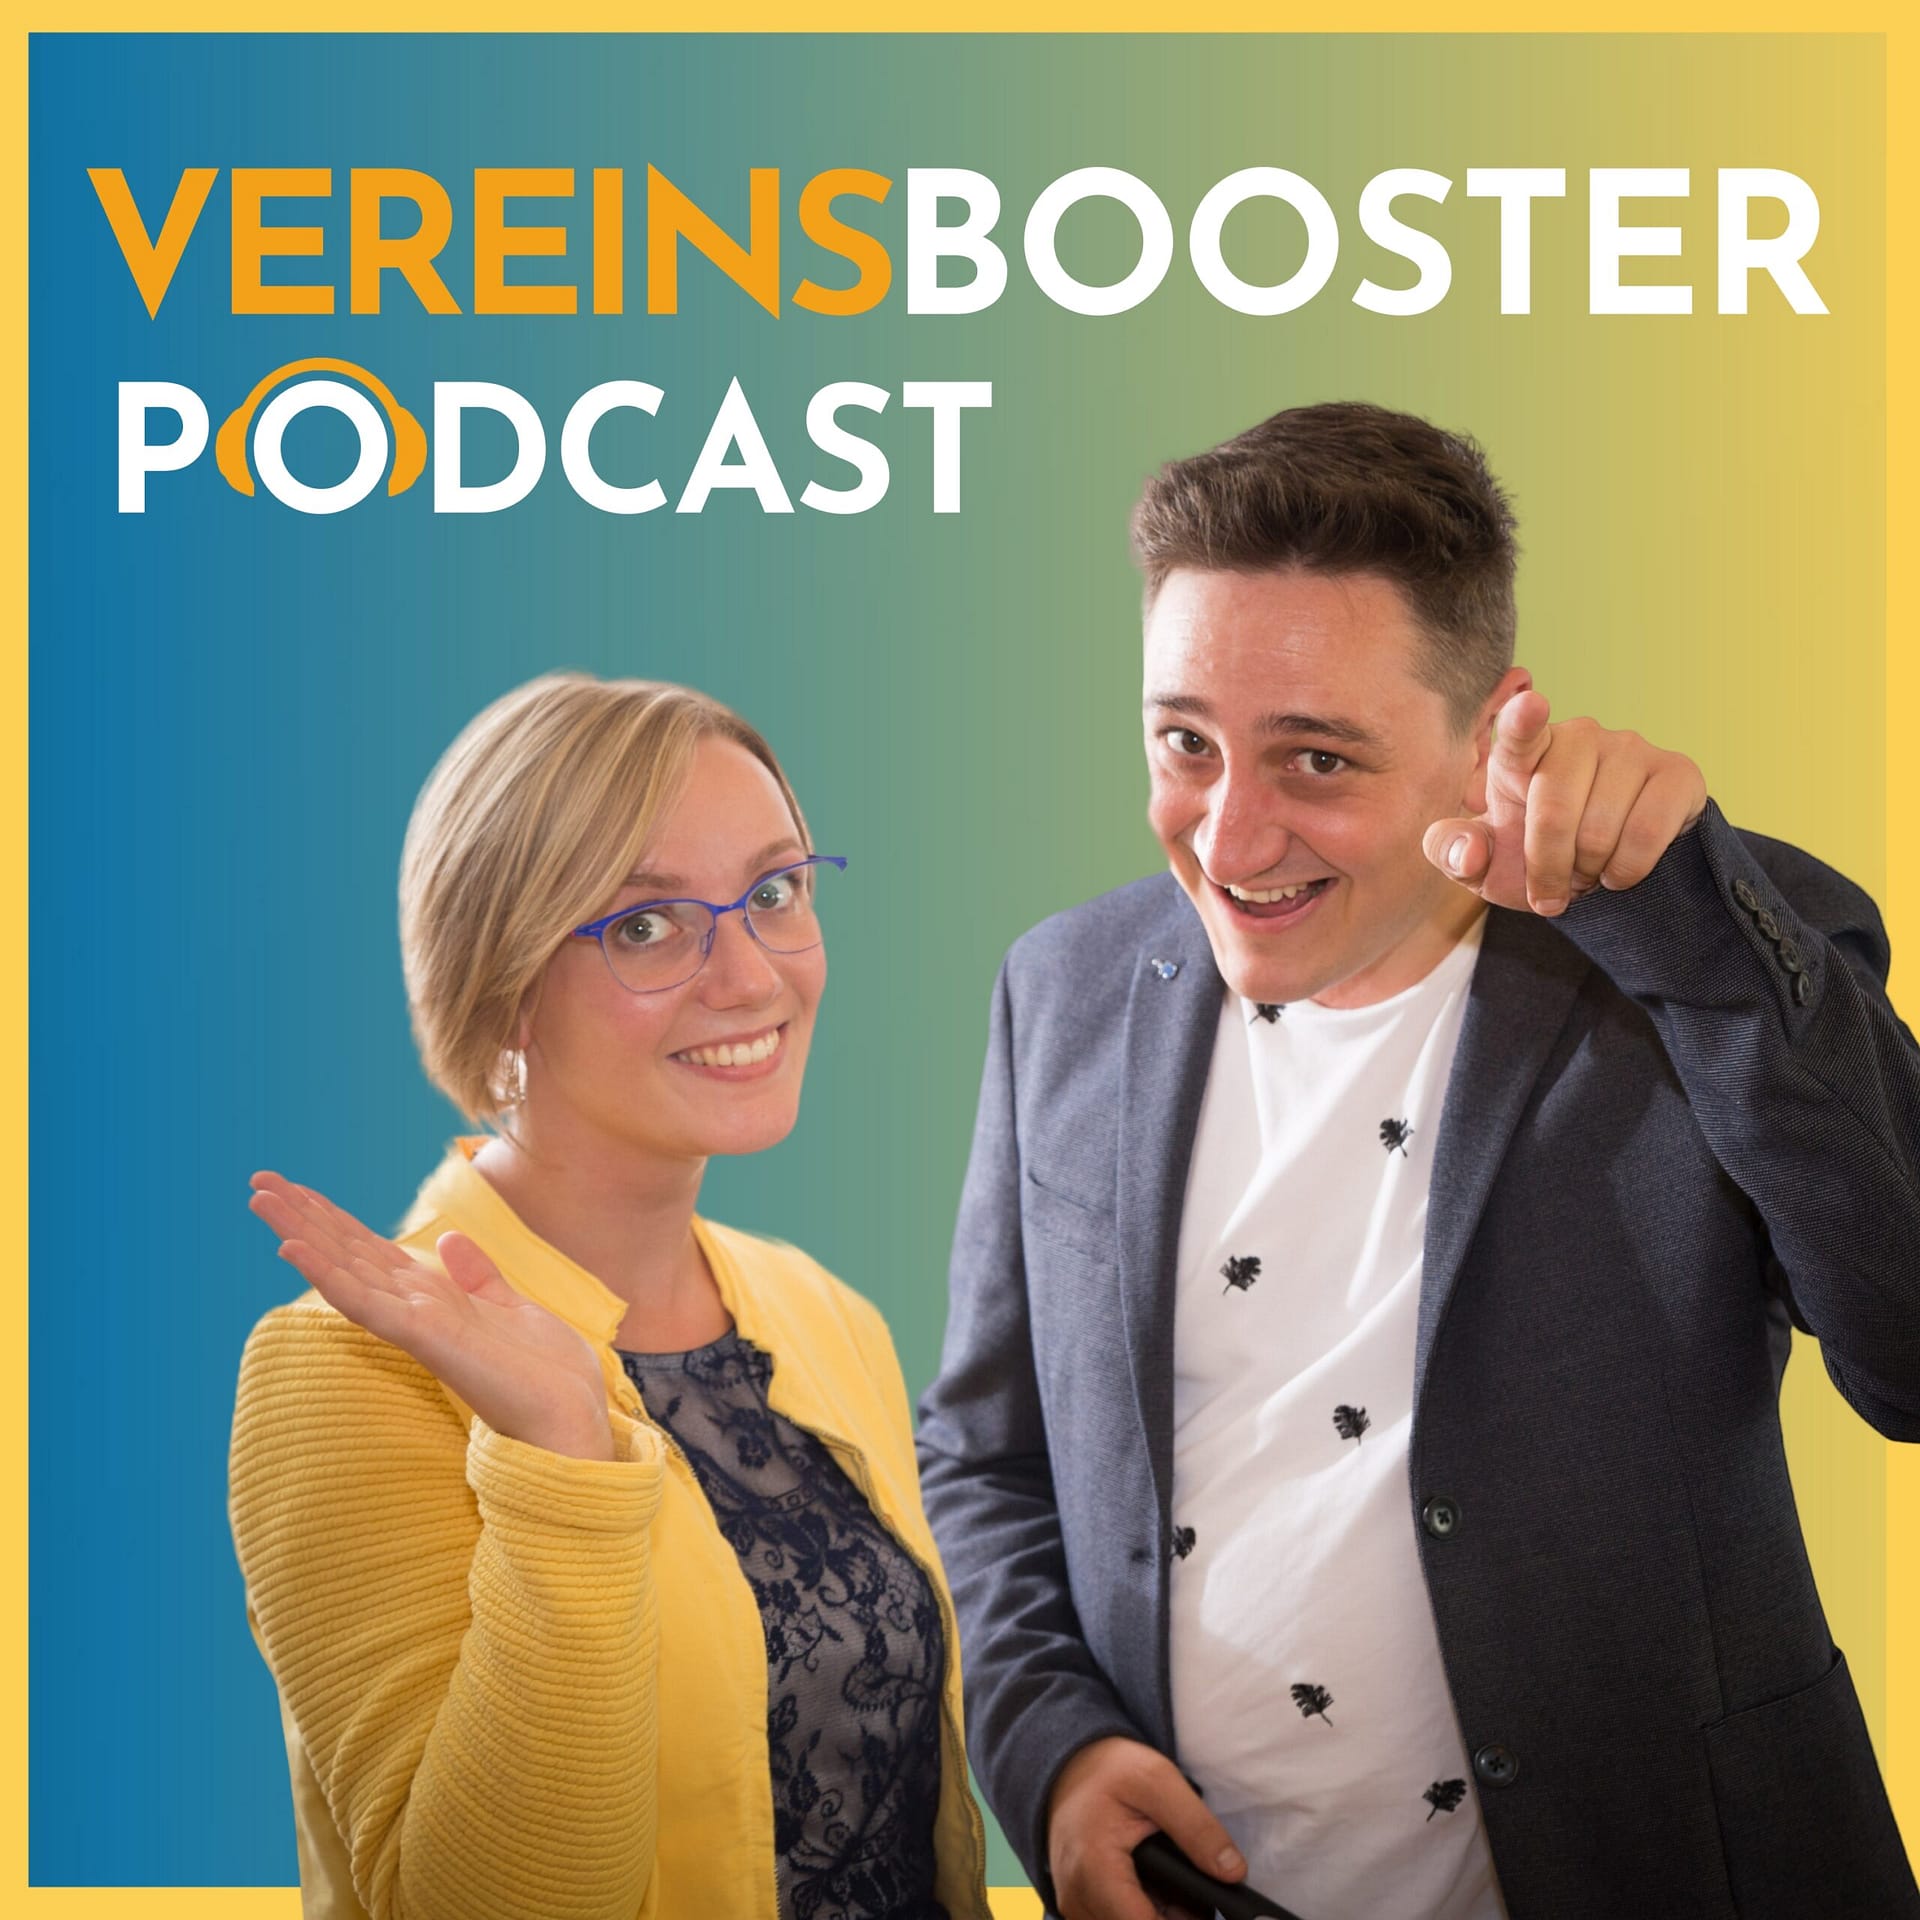 Teil 1: Traditionen leben - Barbara Marksteiner und Sabine Grünberger von der Goldhauben Gruppe in Oberösterreich podcast vereinsbooster cover 2023 highresolution scaled